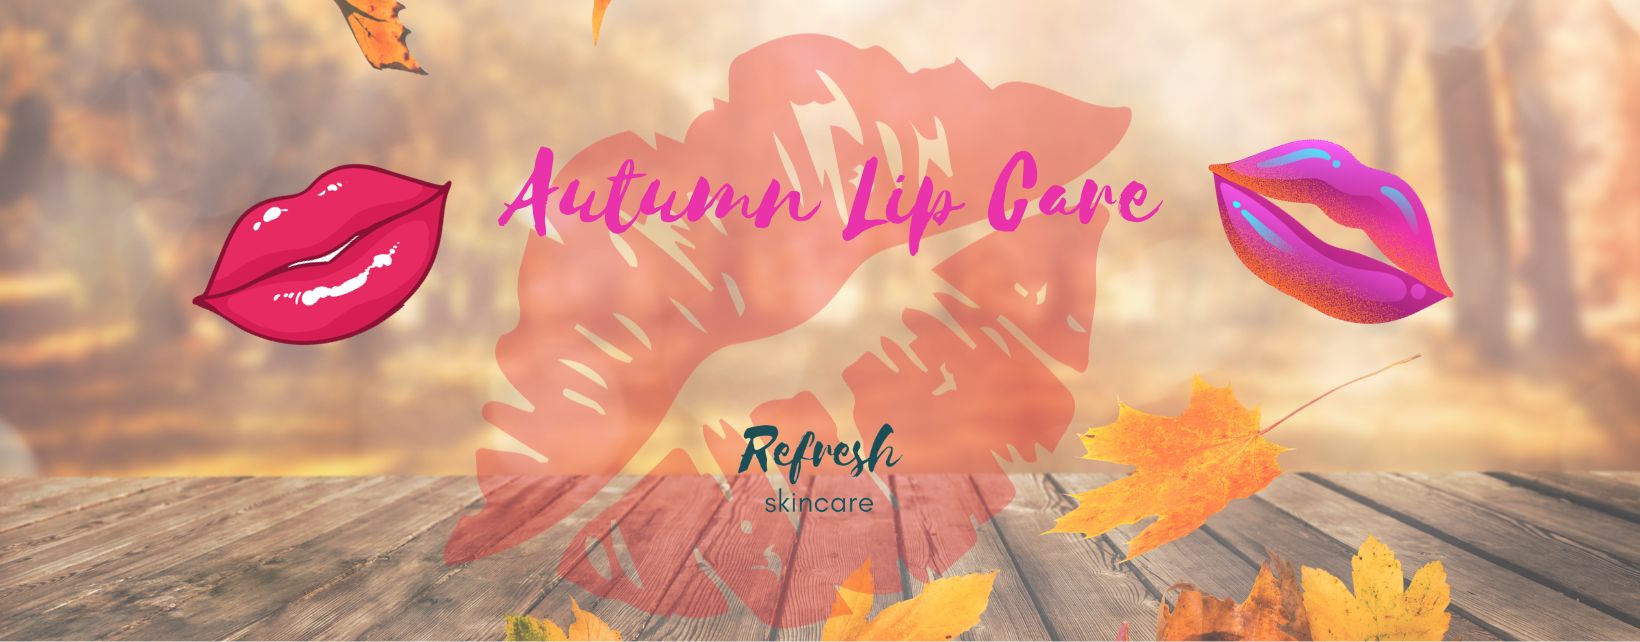 Korean K-Beauty Skincare for lips in the autumn UK